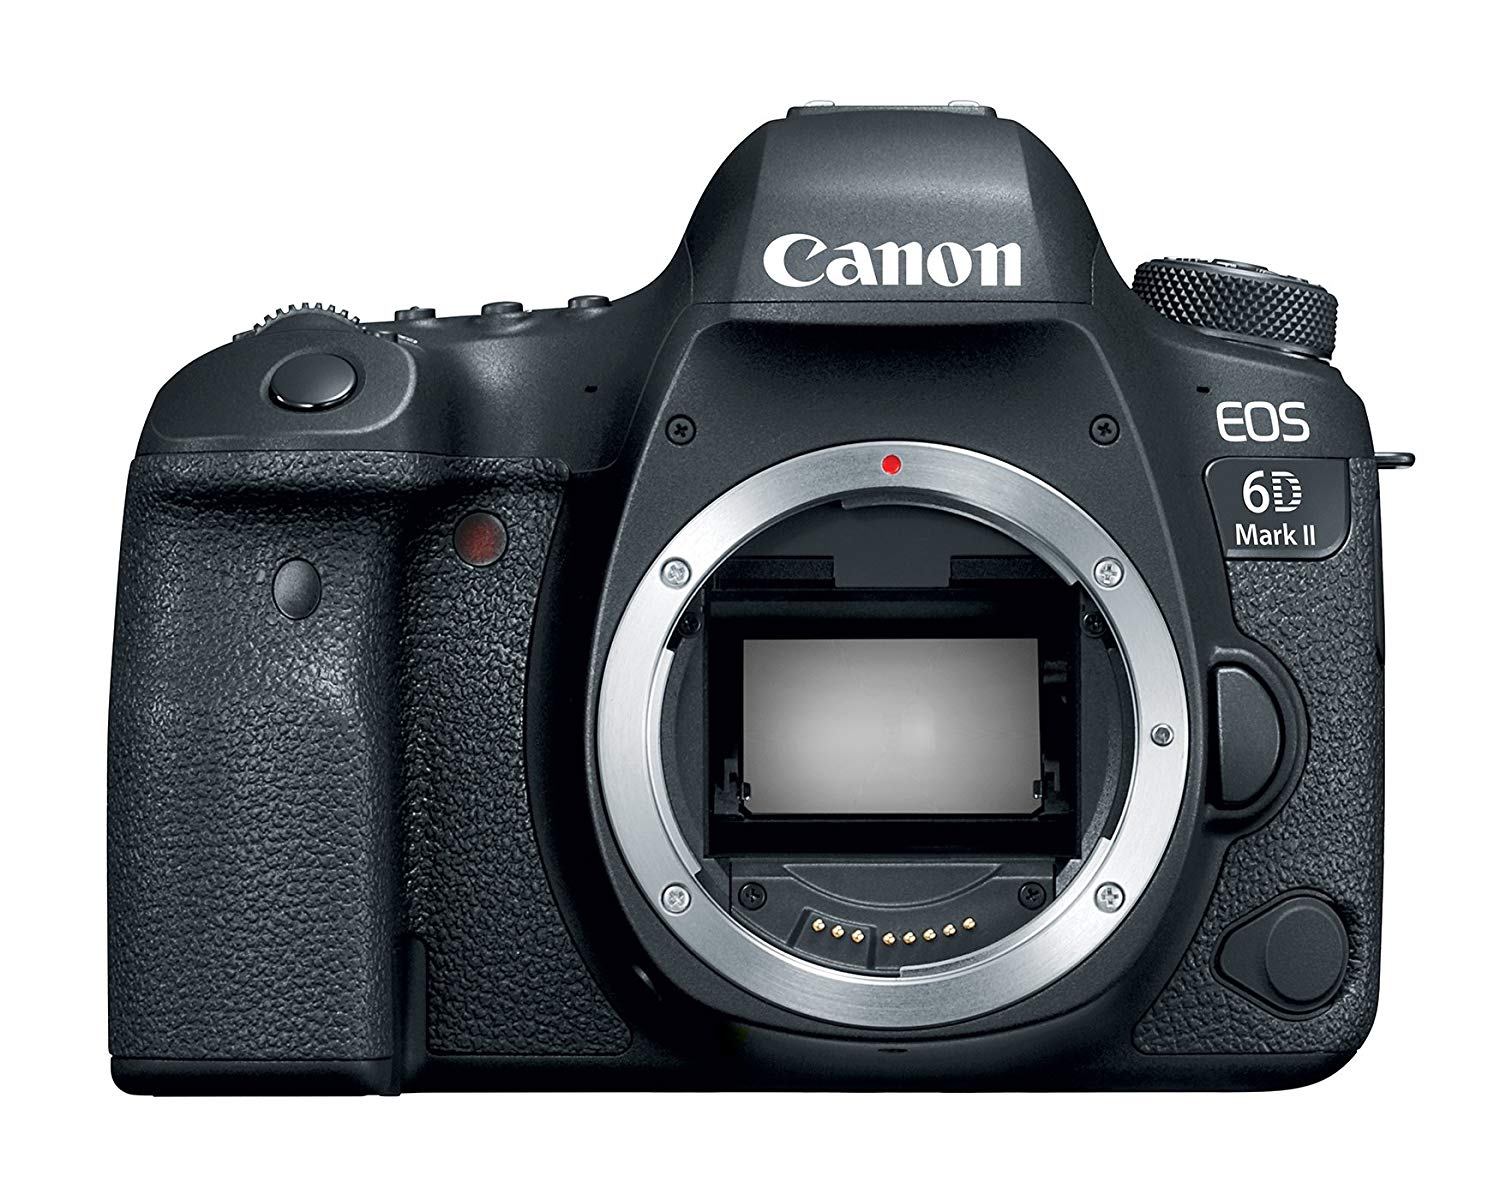 Canon EOS 6D Mark II Digital SLR Camera Body – Wi-Fi En...